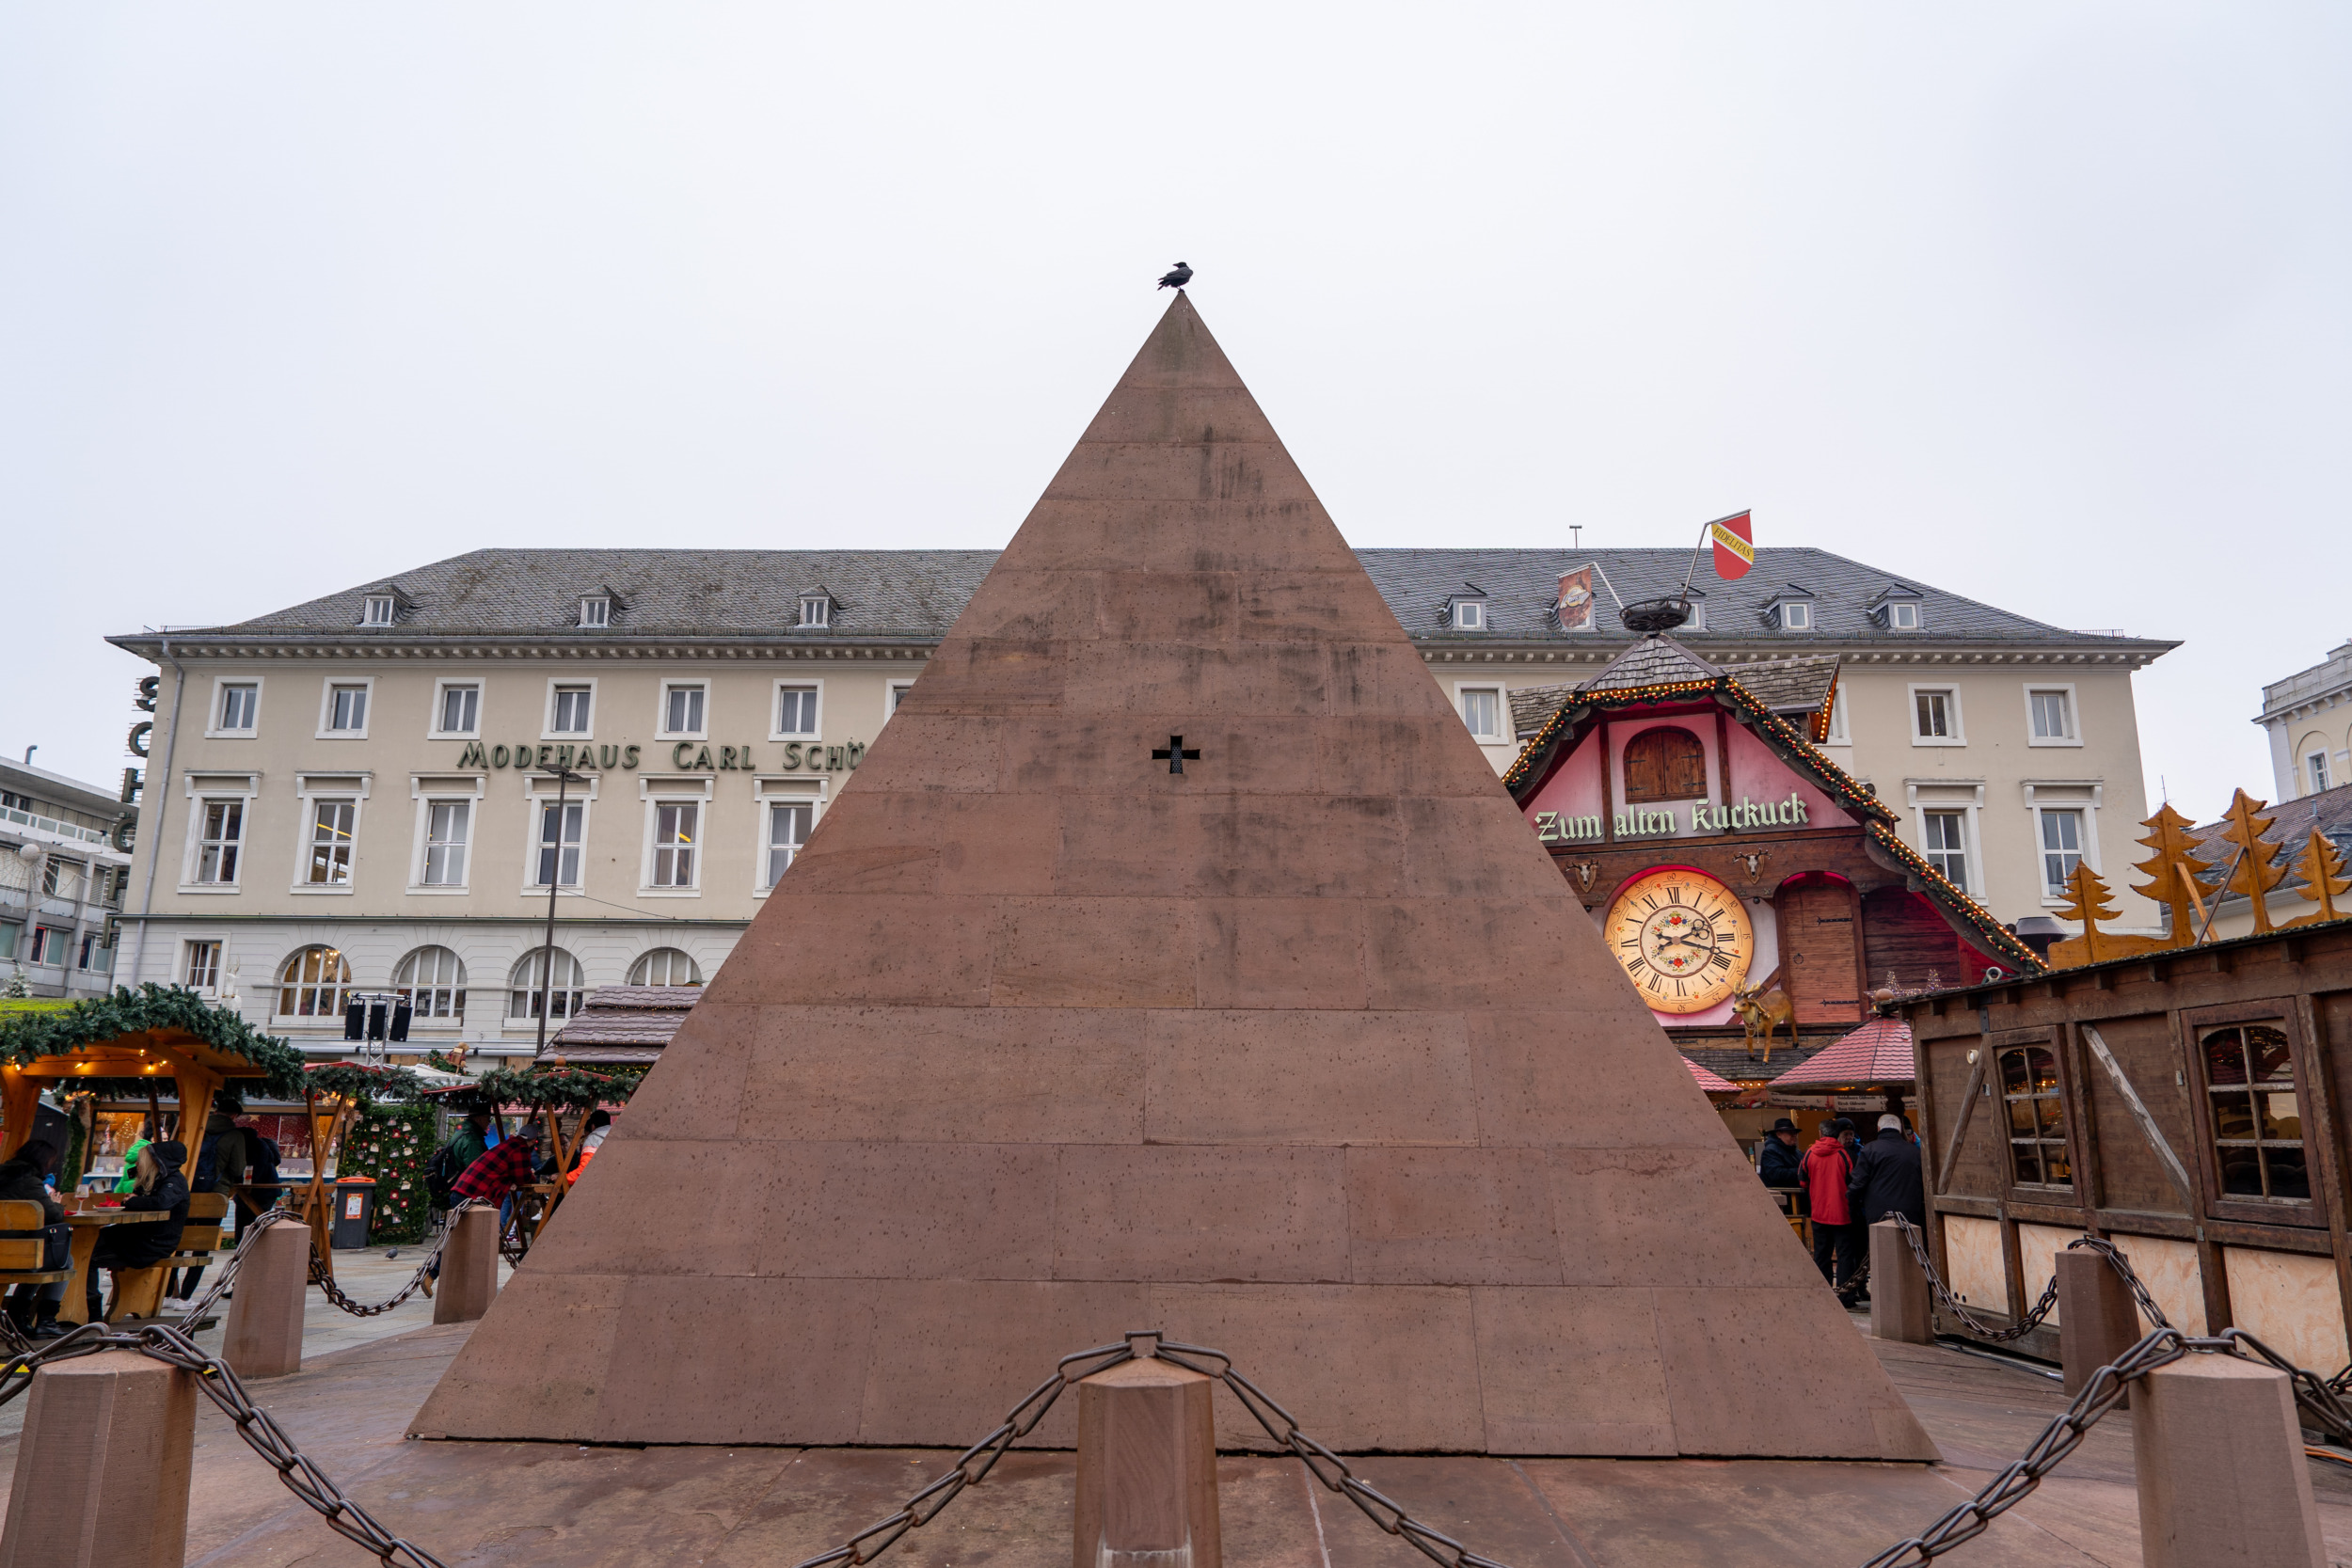 Hinter der Karlsruher Pyramide versteckt sich ein wahres Geheimnis